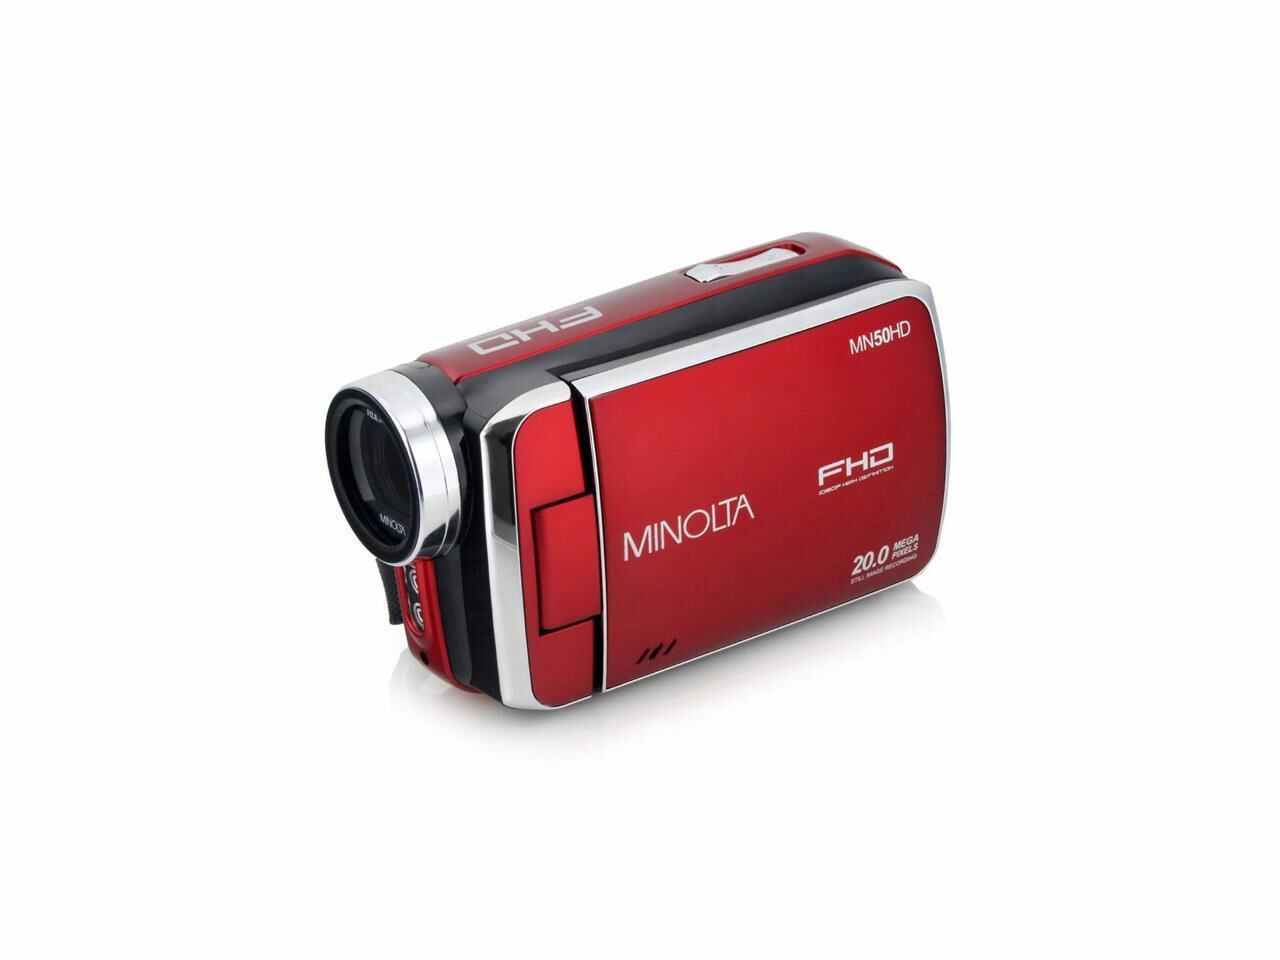 Minolta MN50HD 1080p Full HD 20MP Digital Camcorder, Red #MN50HD-R